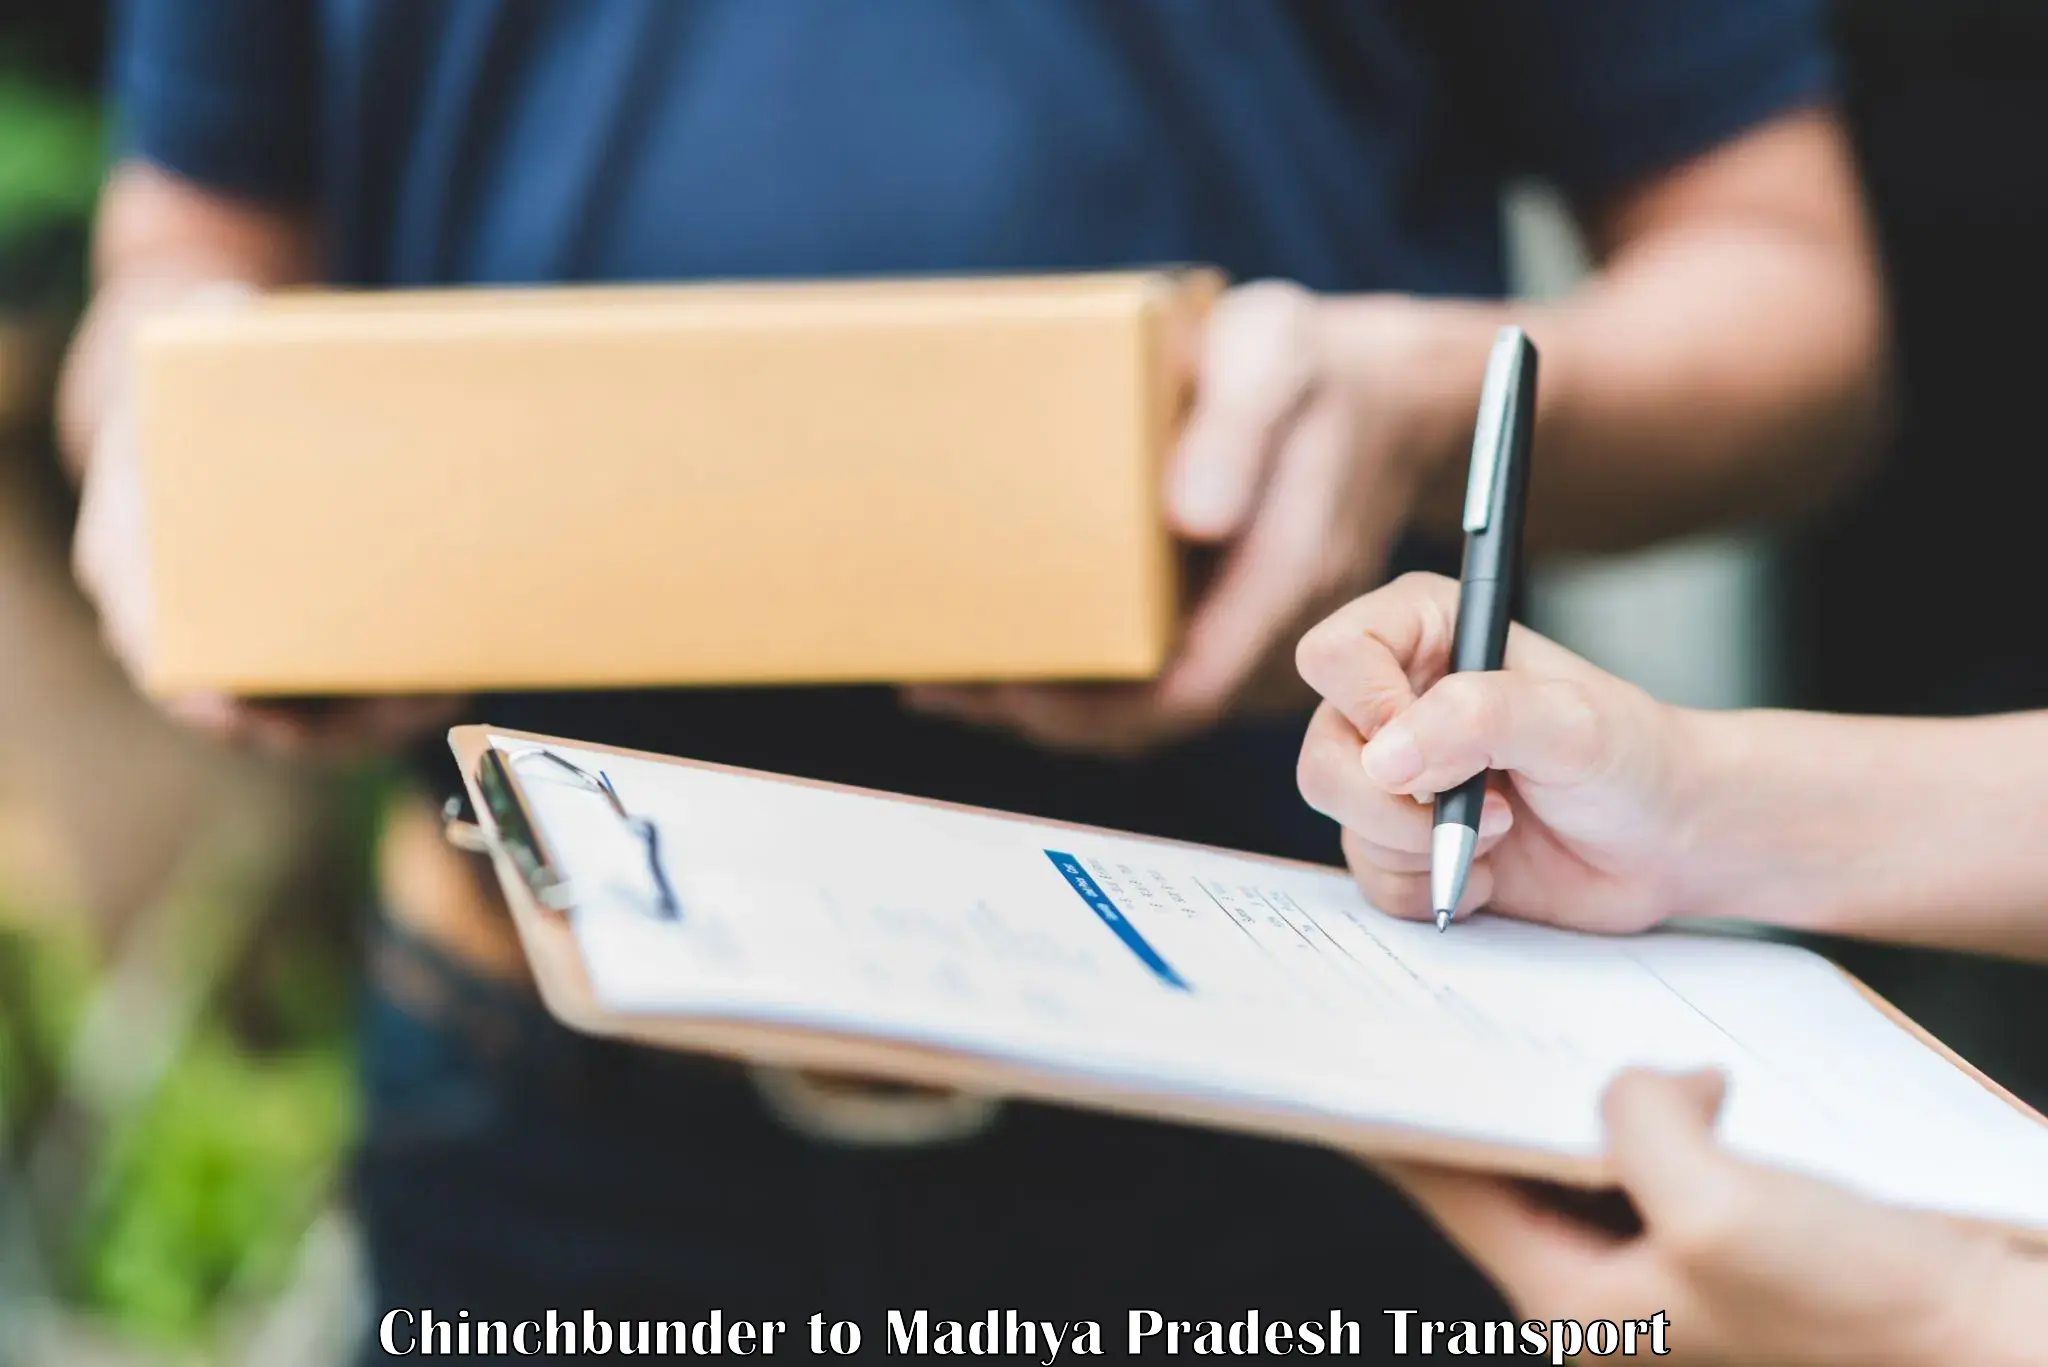 Container transport service Chinchbunder to Amarwara